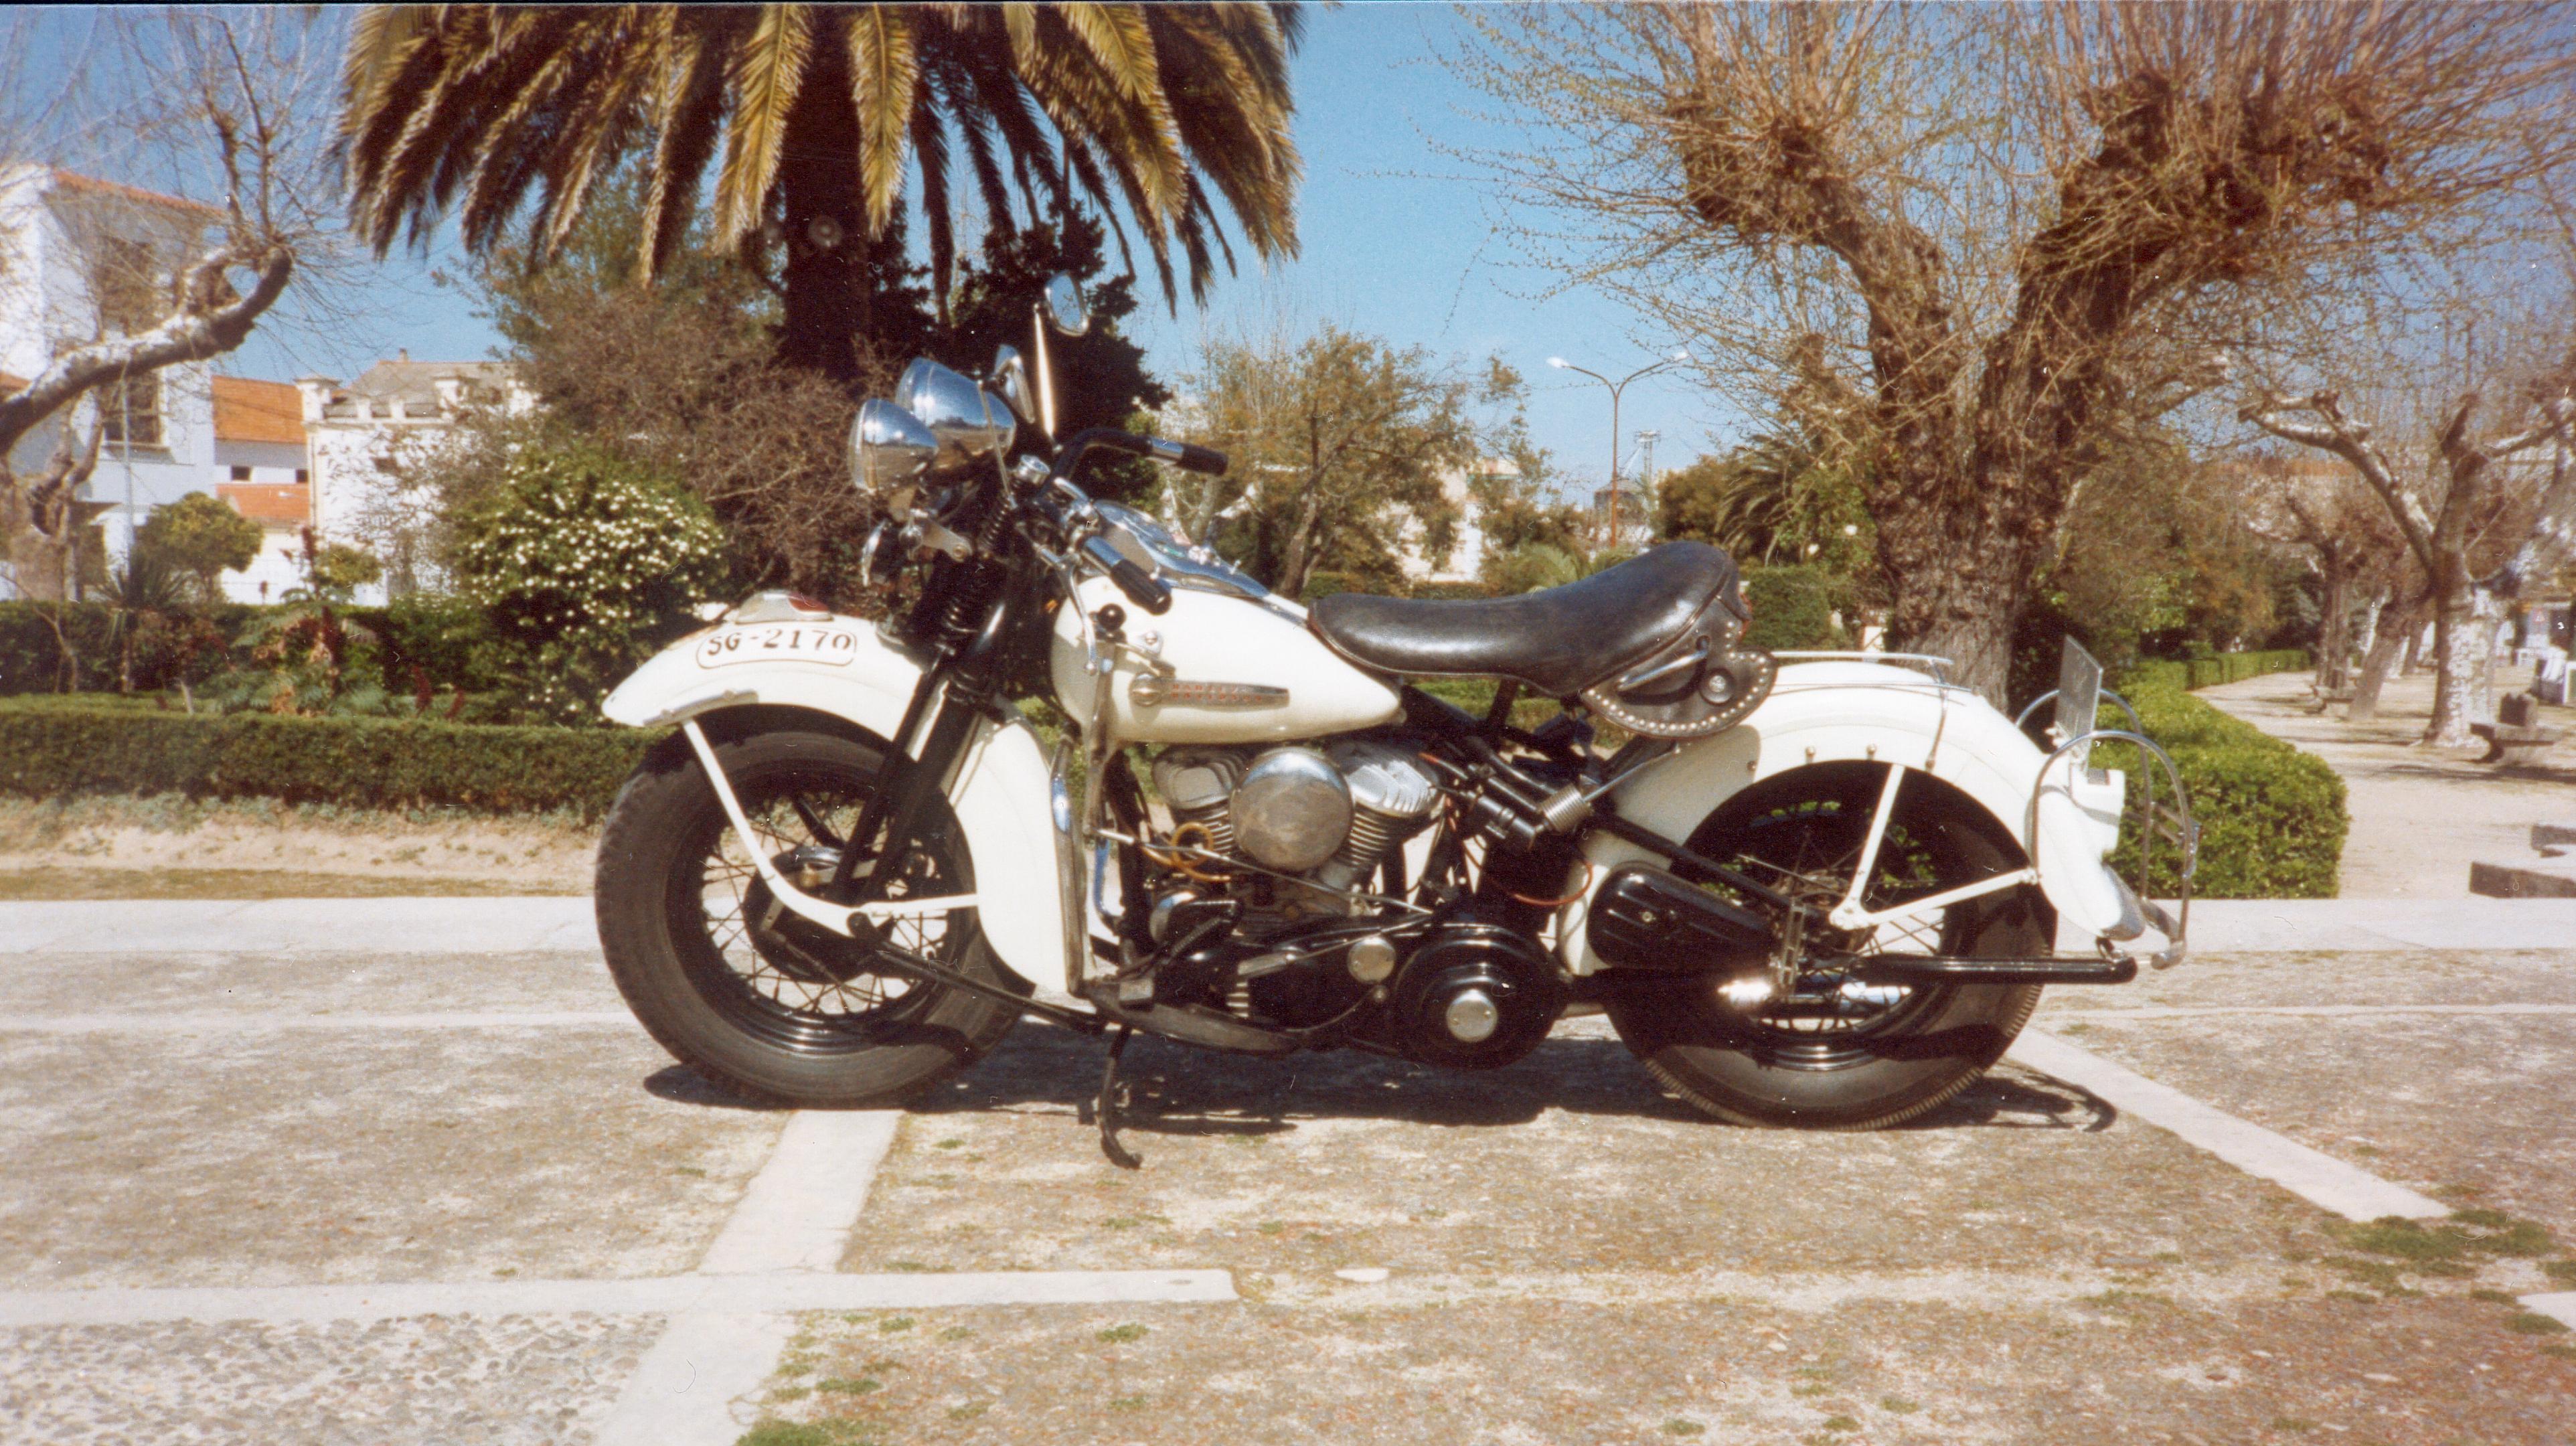 1995 Harley-Davidson en parque V. de Alcántara